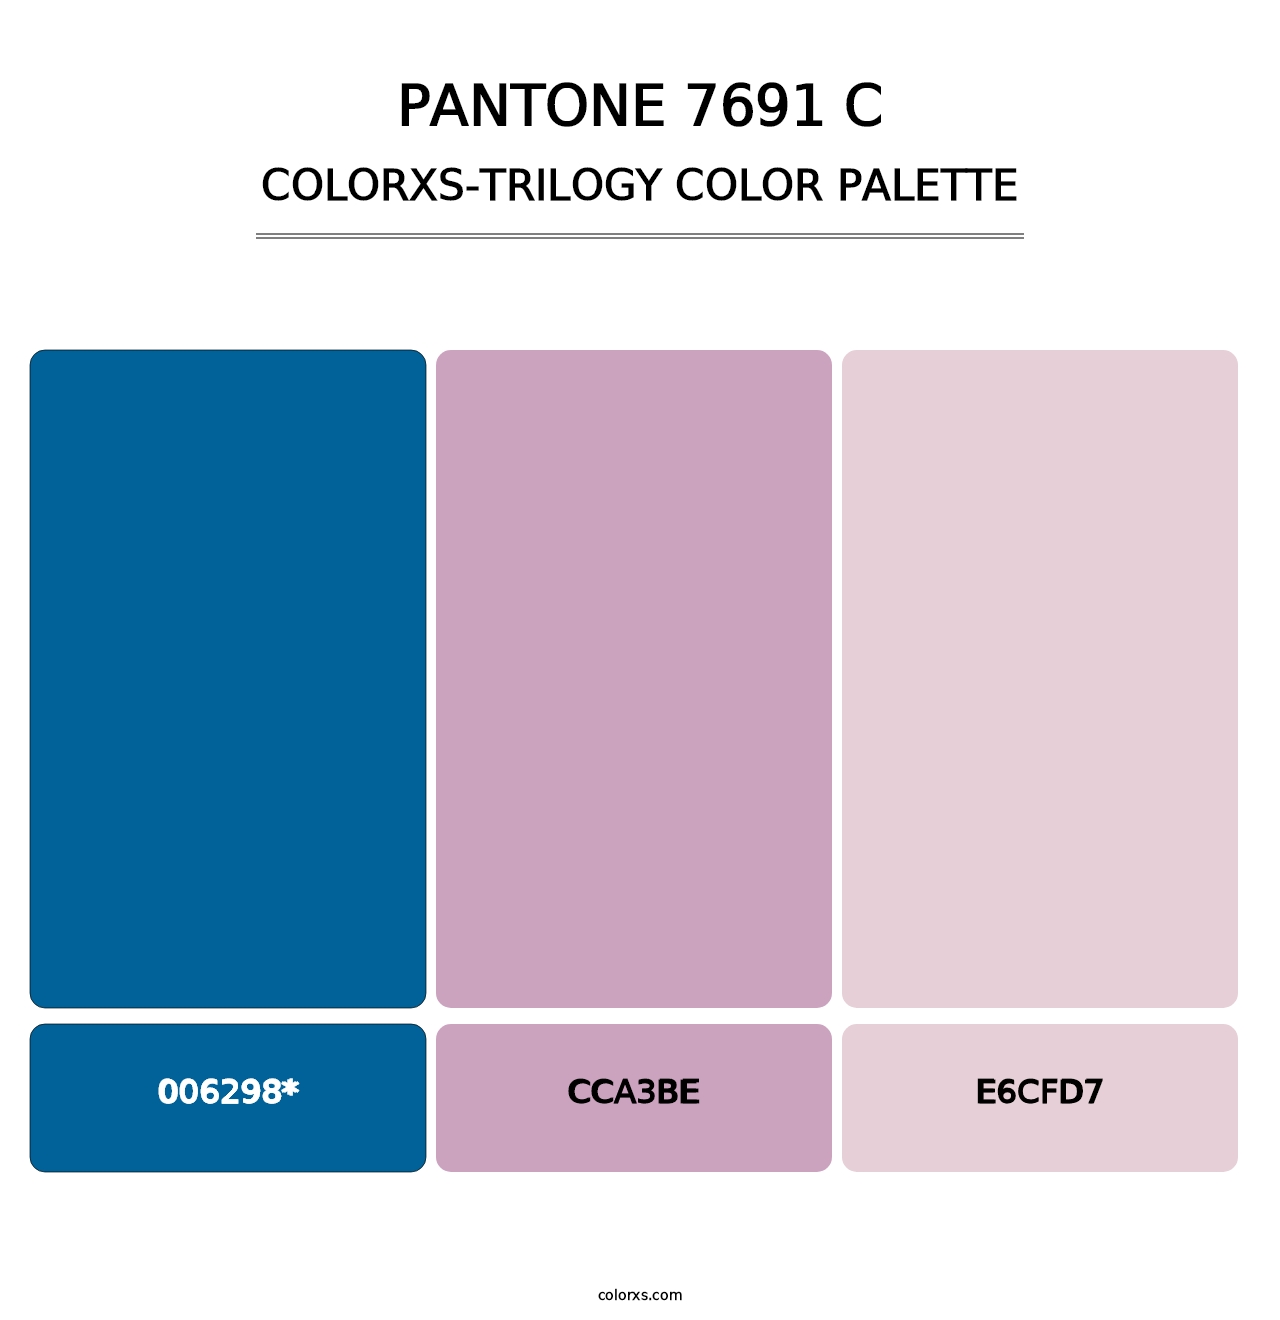 PANTONE 7691 C - Colorxs Trilogy Palette